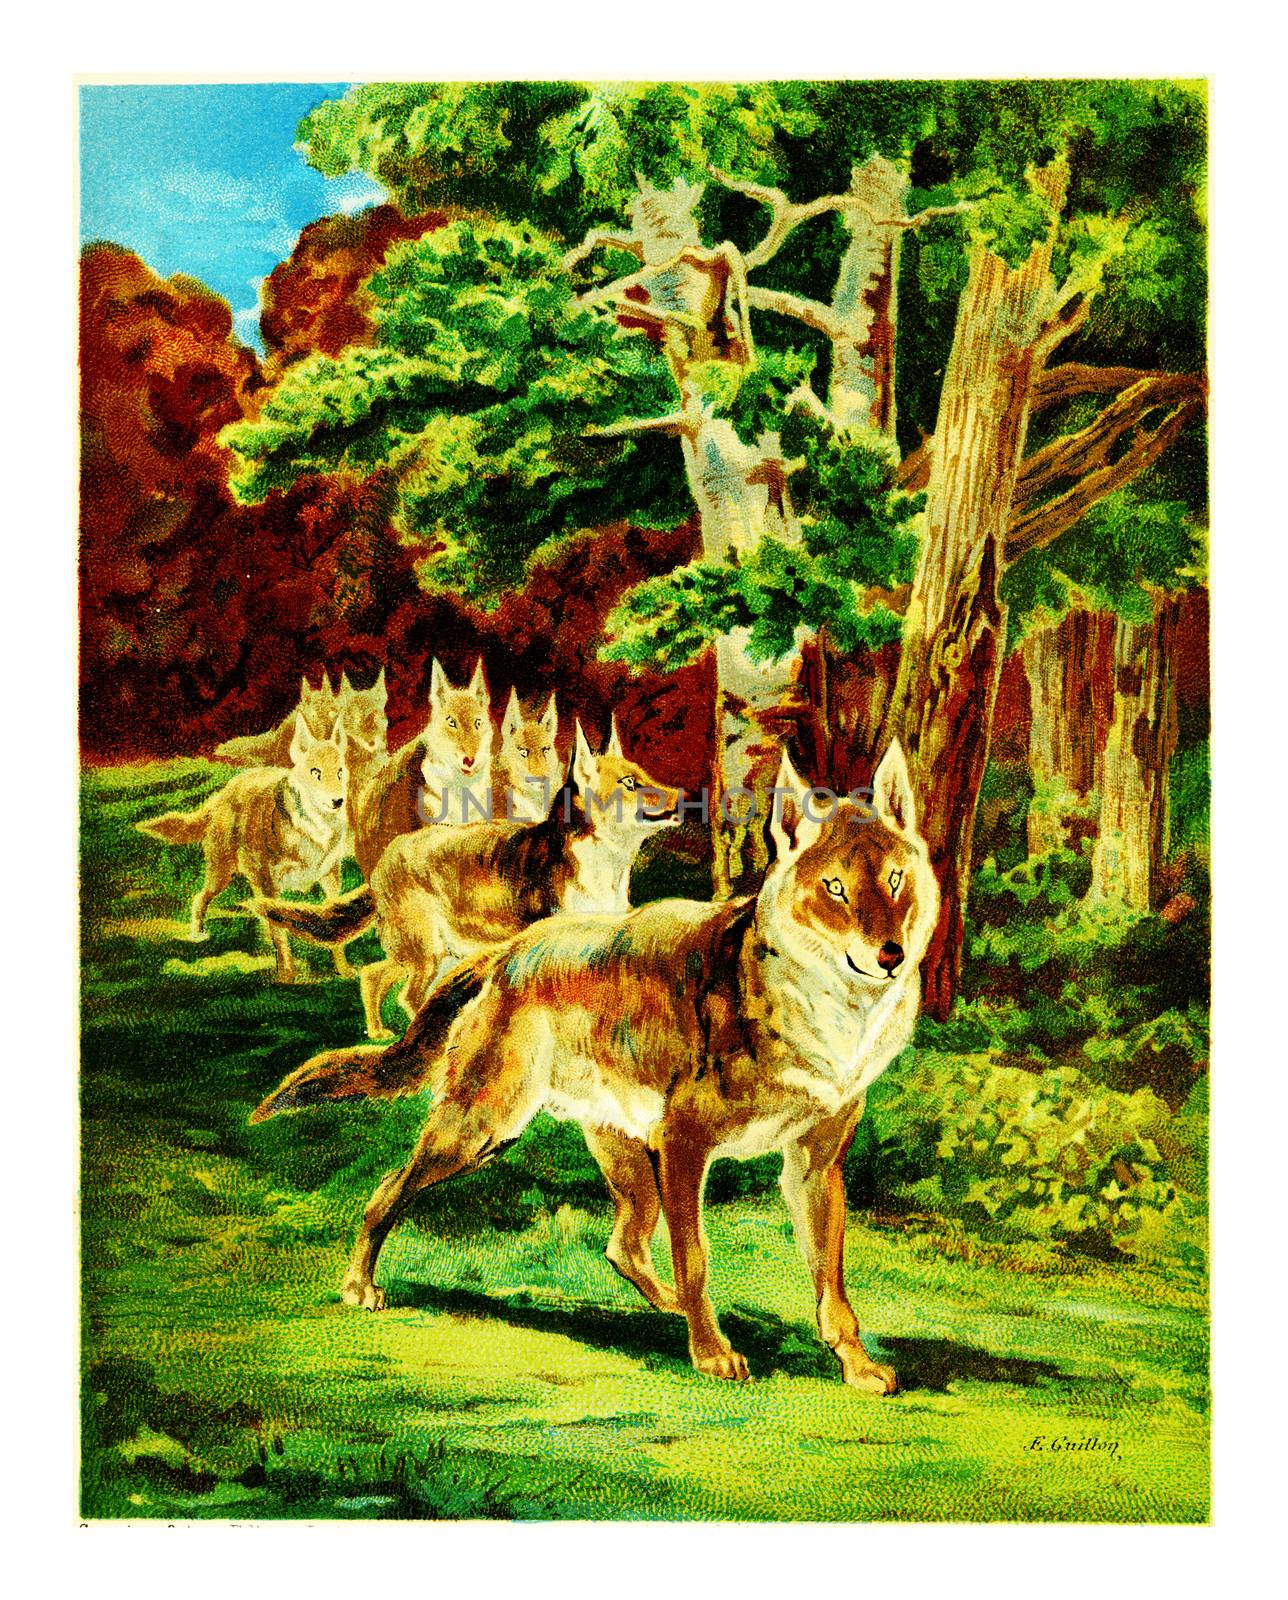 Wolves in forest, vintage engraved illustration.